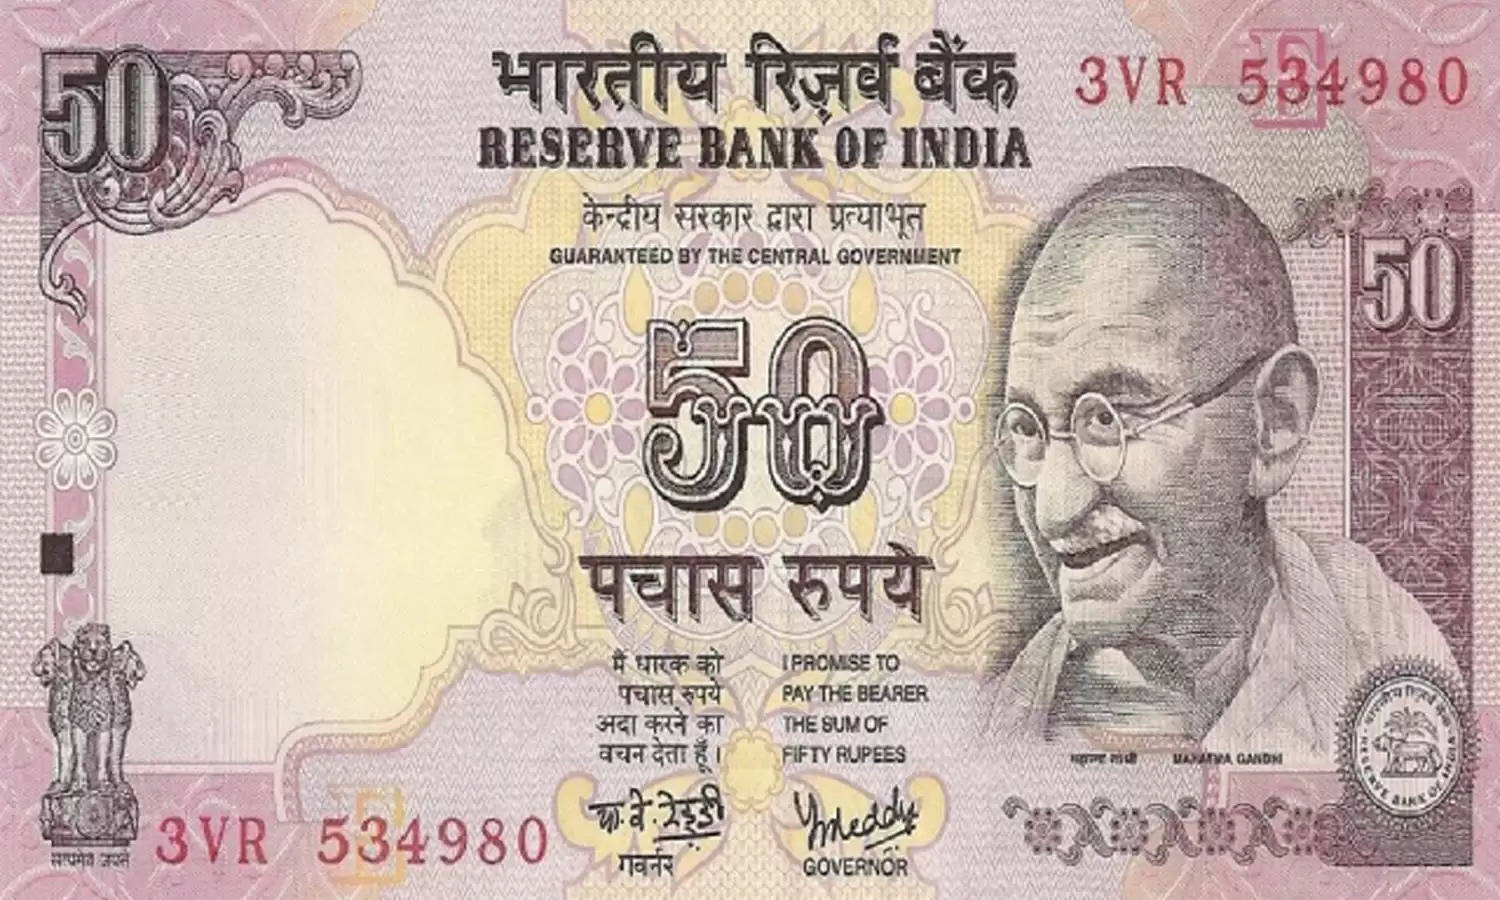 यह 50 का नोट आपके पास तो खुशी का नहीं ठिकाना, बिक्री कर कमाएं 3 लाख रुपये, जानिए बेचने का तरीका